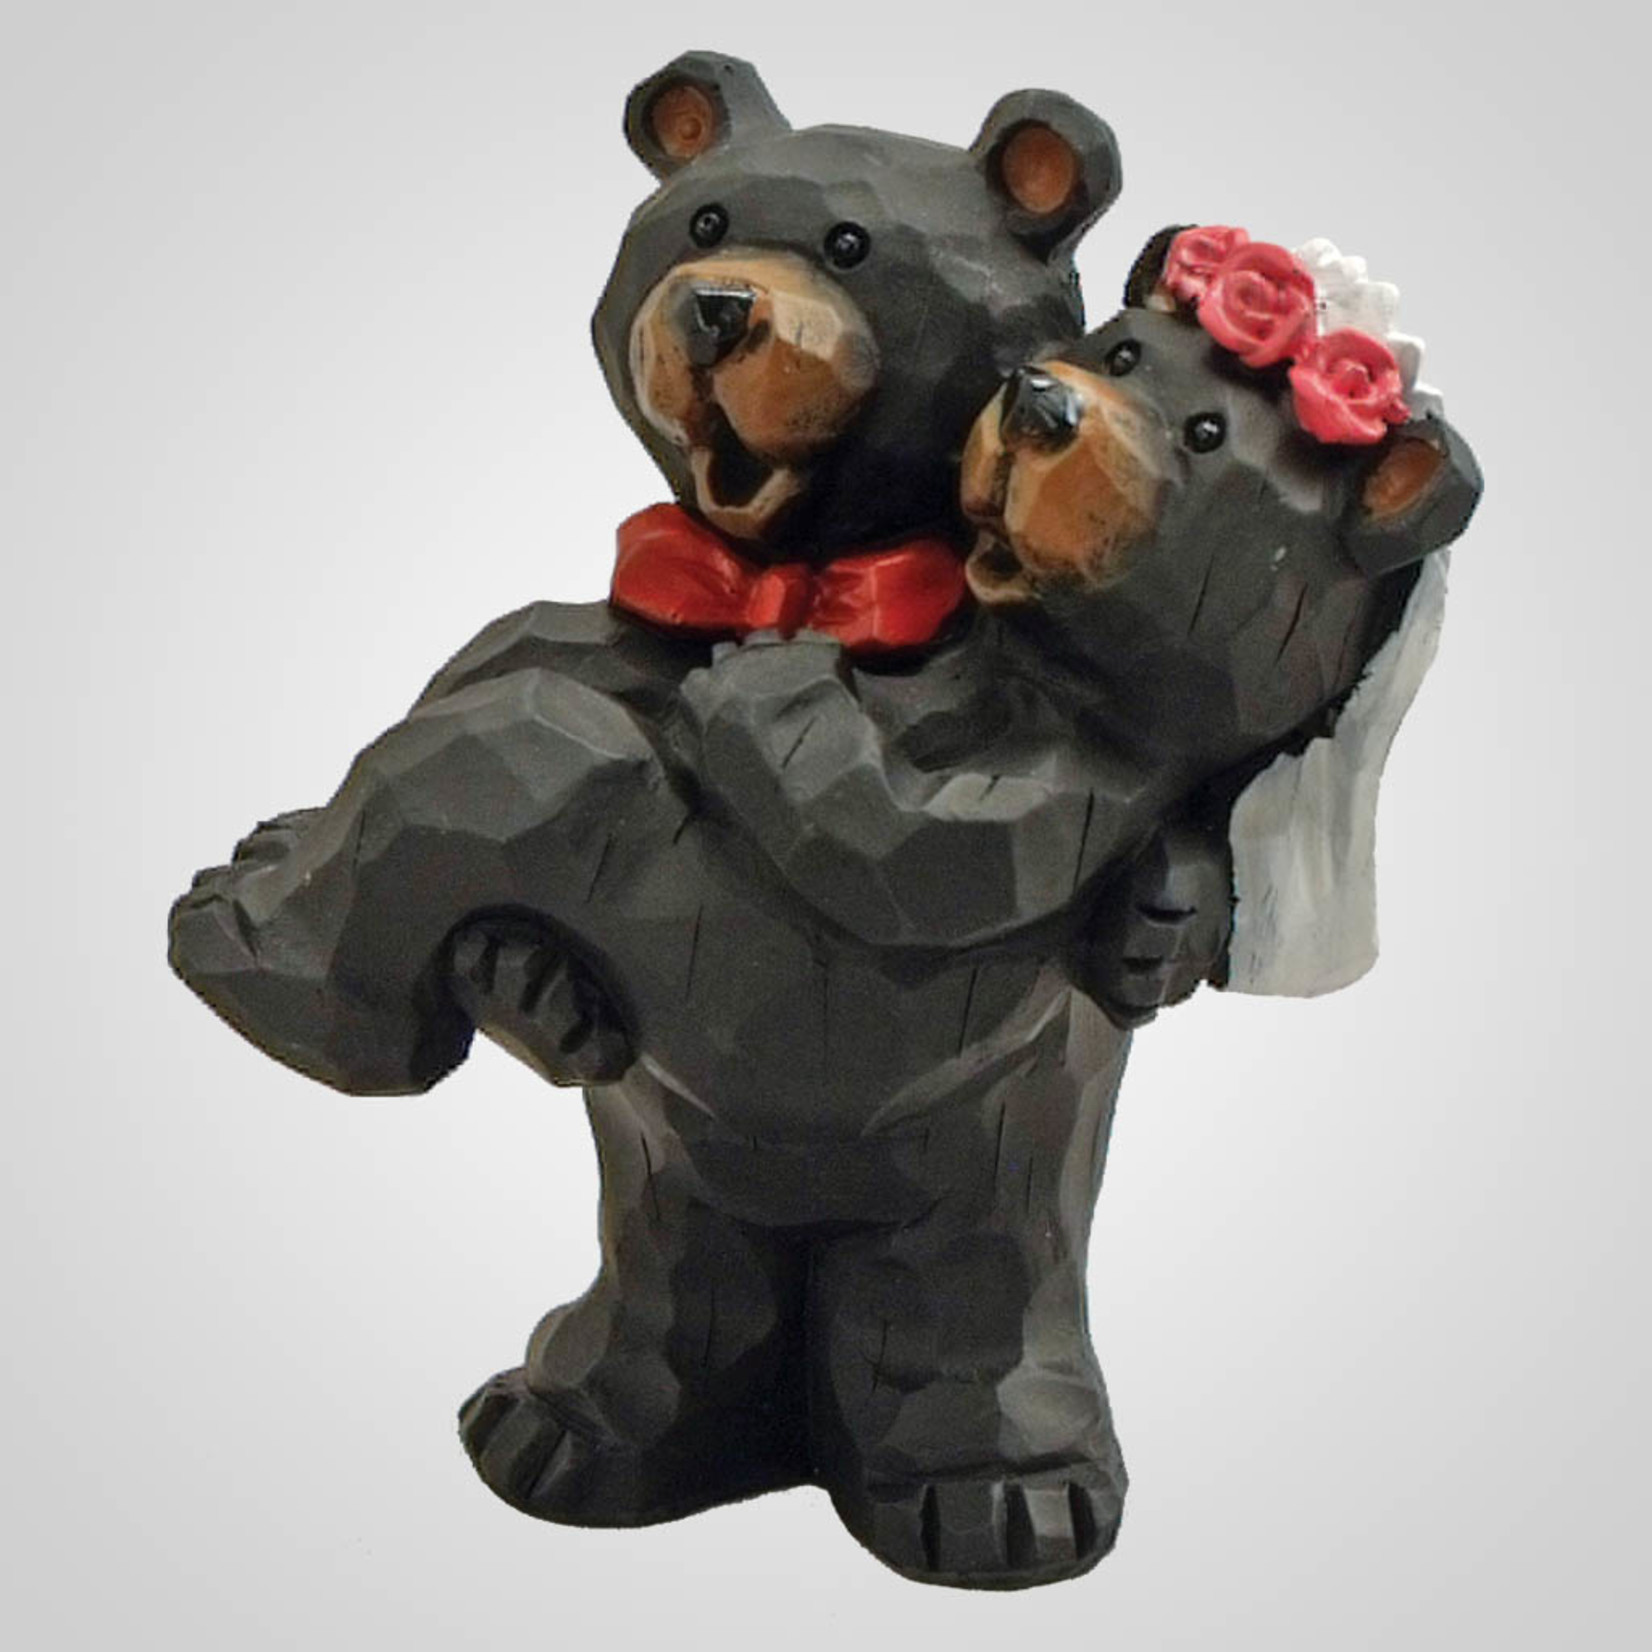 Bear Bride carried by groom